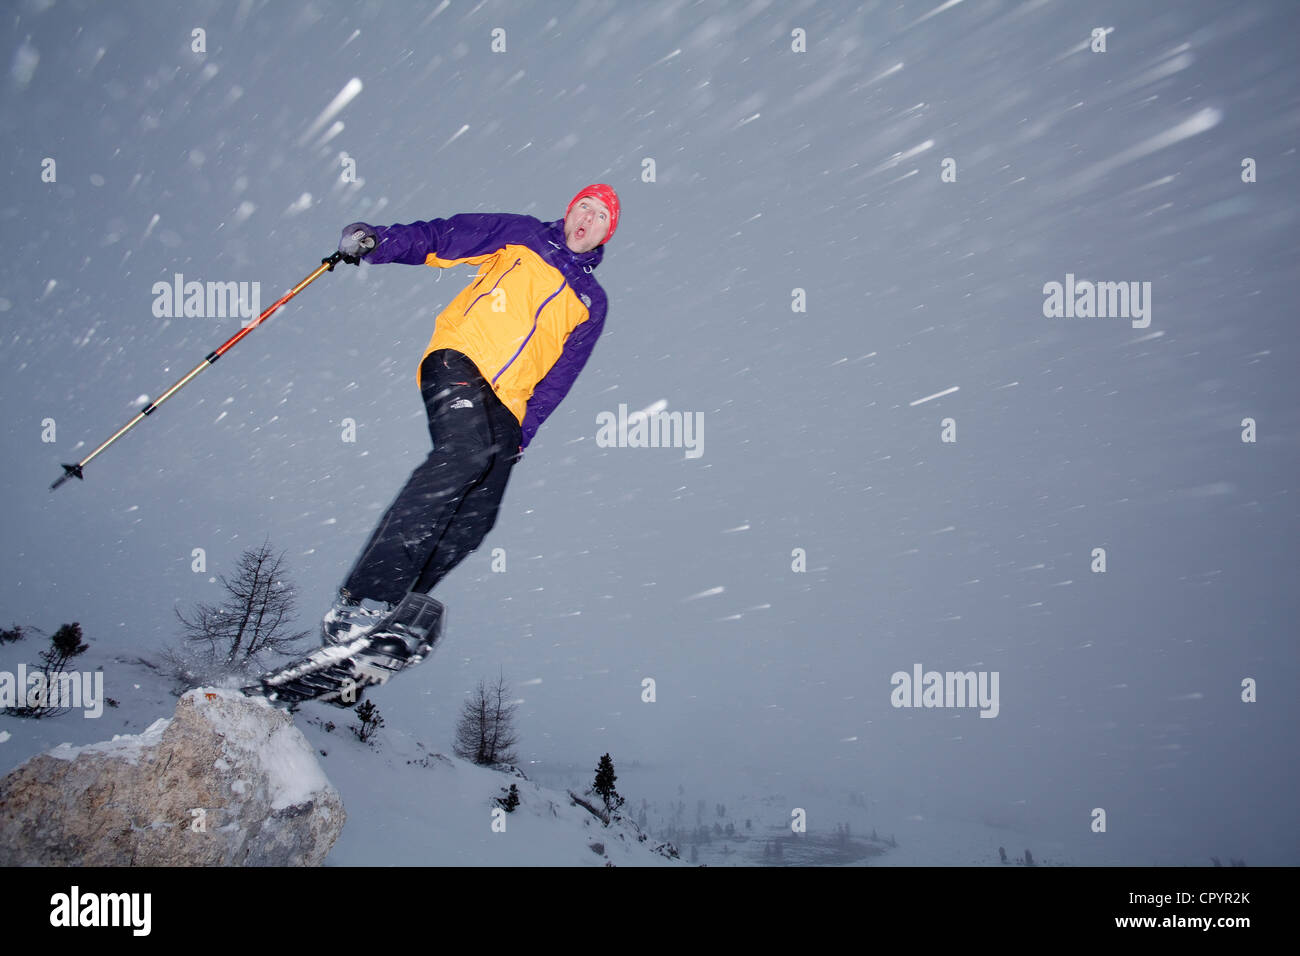 Gli escursionisti con racchette da neve sui Fanes alp, st. veglia, alto adige, alto adige, italia, europa Foto Stock